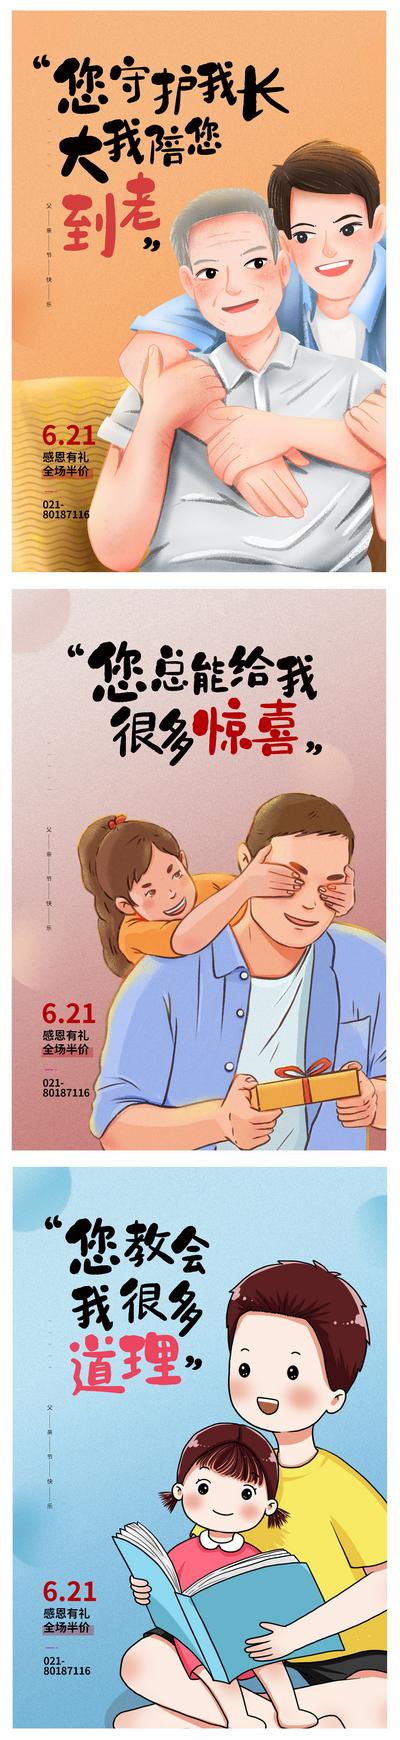 【南门网】海报 公历节日 父亲节 父爱 感恩 陪伴  插画